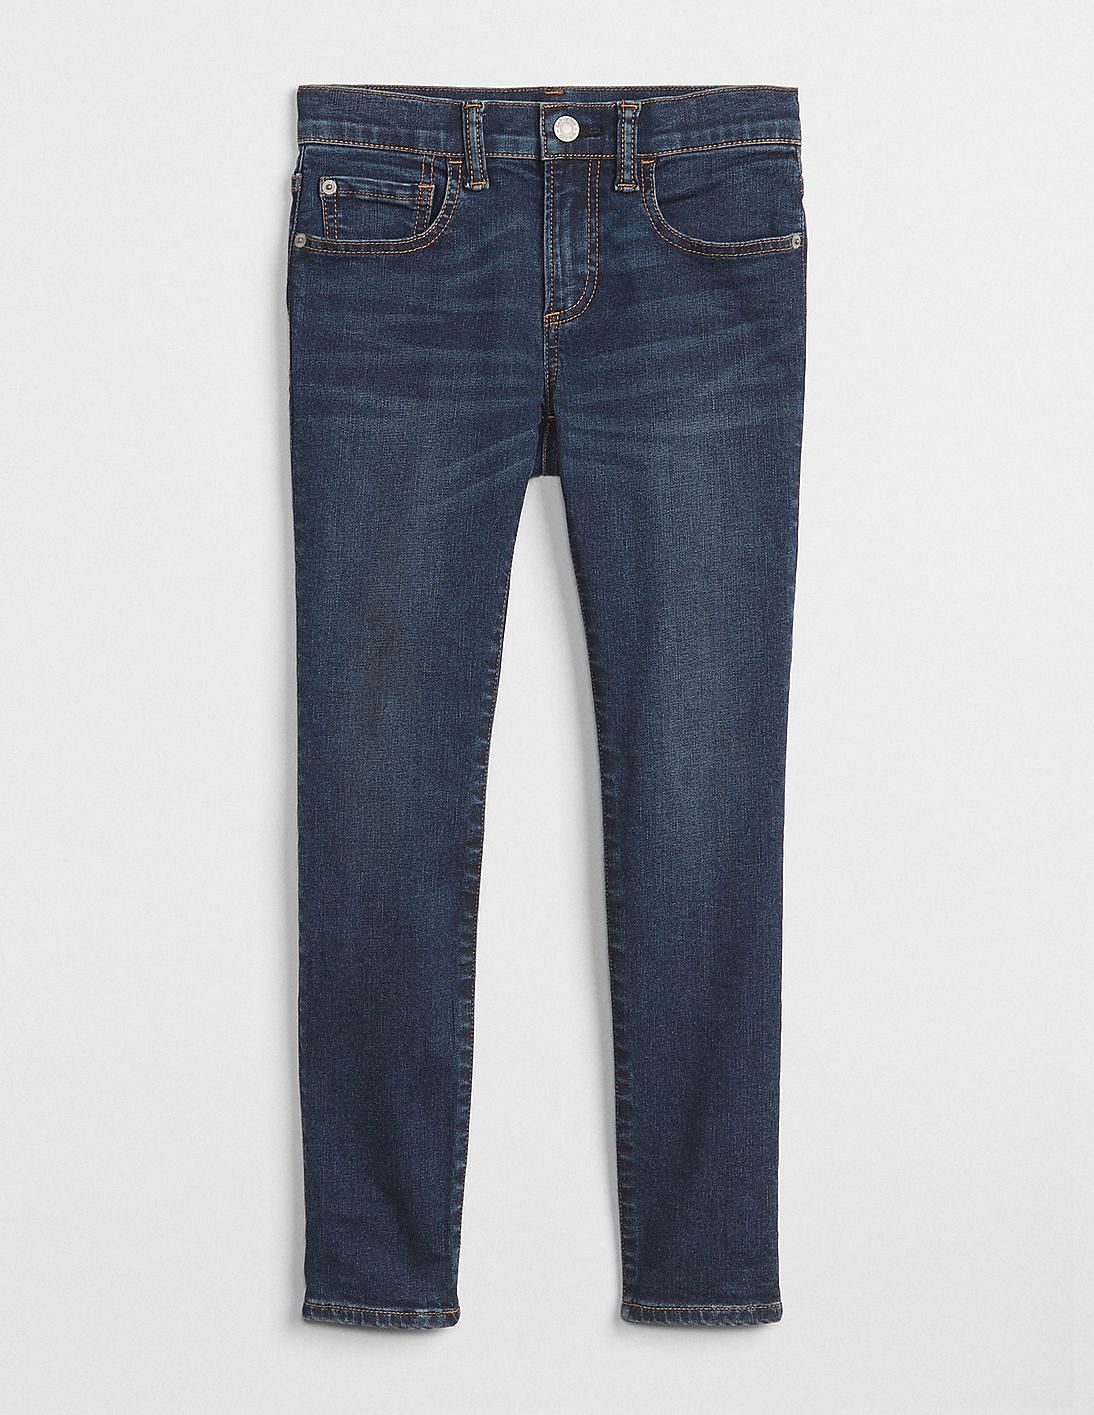 boy cut jeans gap